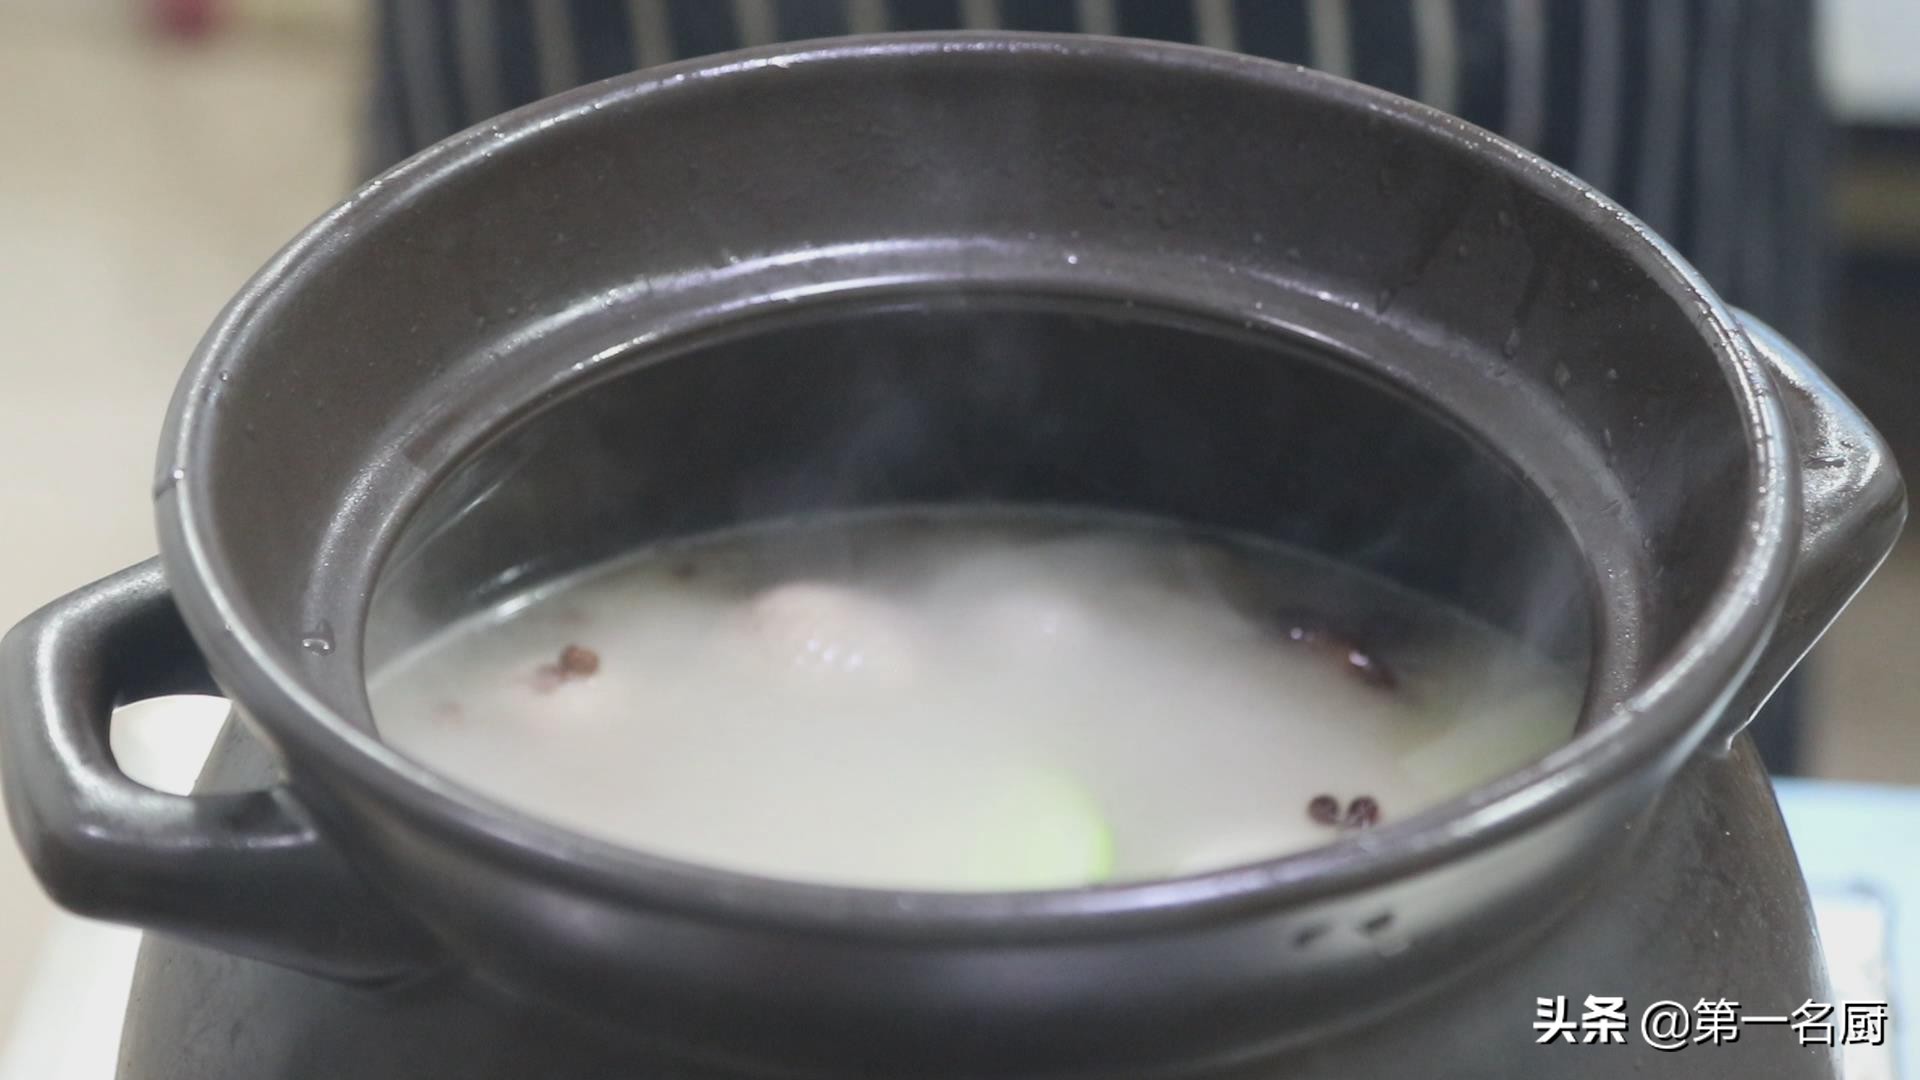 老鸭汤的做法,老鸭汤的做法 最正宗的做法